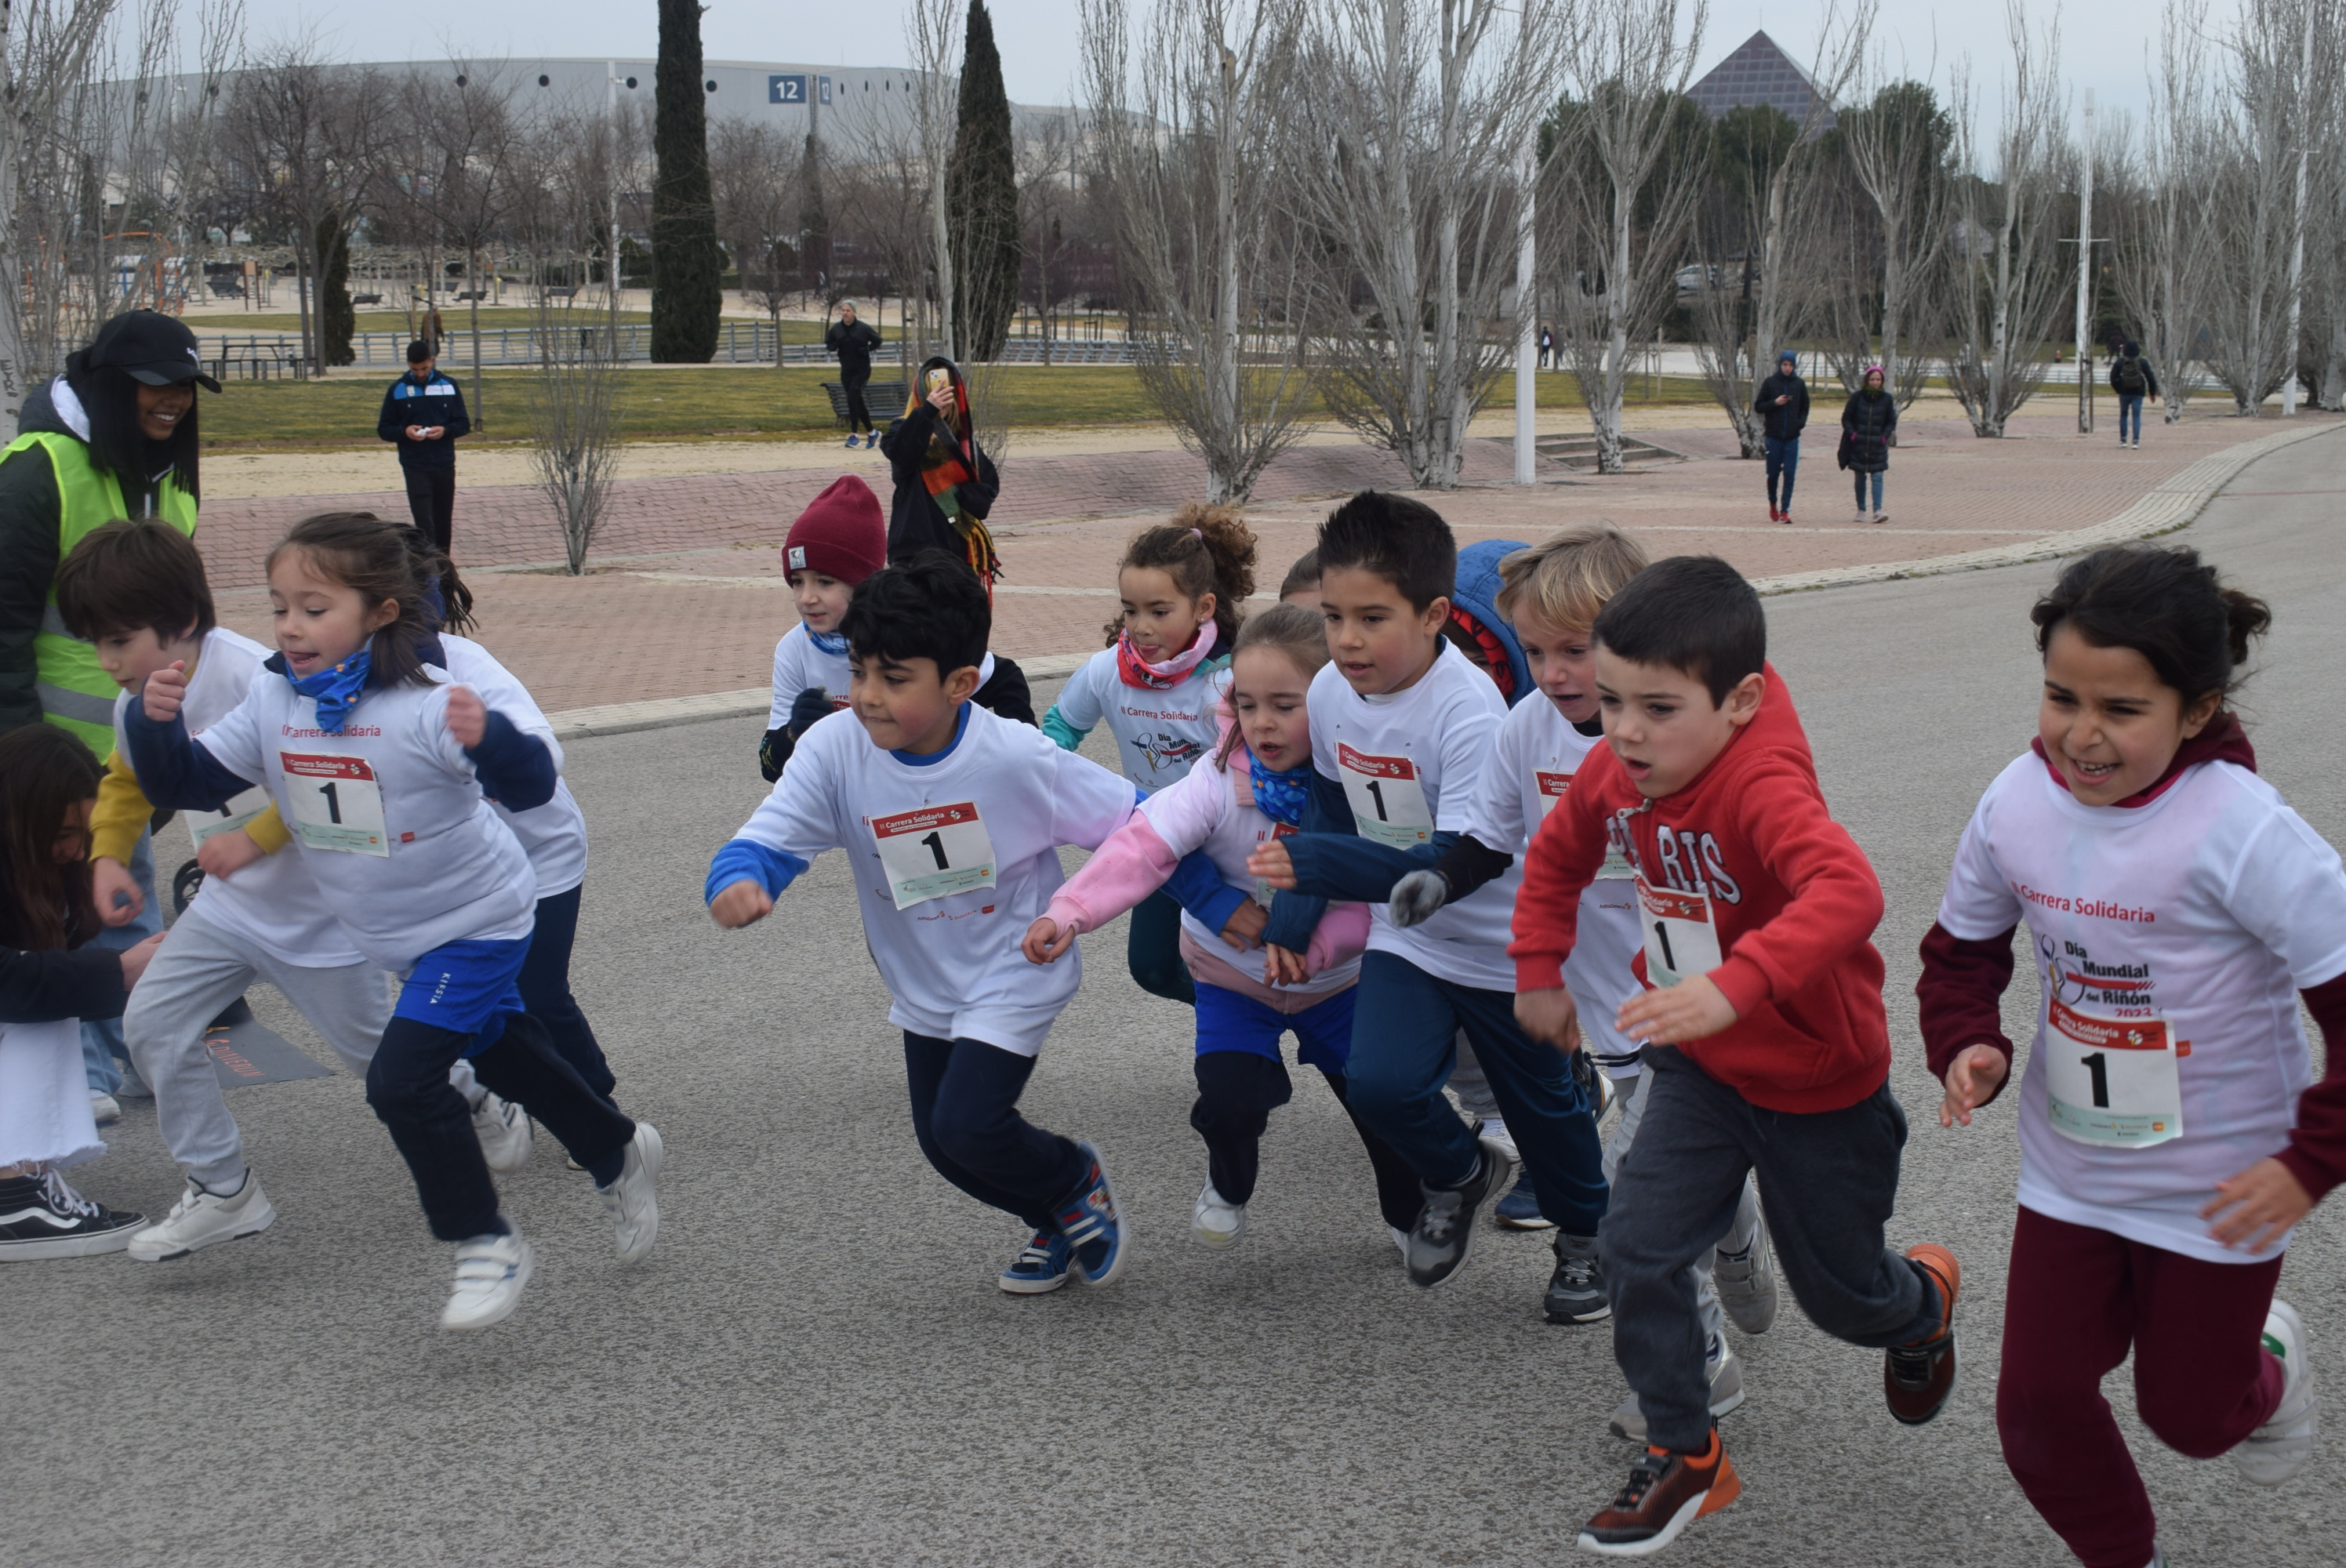 Cerca de 500 personas participan en Madrid en la II Carrera Solidaria “Muévete por la Salud Renal” con el fin de sensibilizar sobre la Enfermedad Renal Crónica y fomentar el ejercicio y los hábitos de vida saludable como medida de prevención